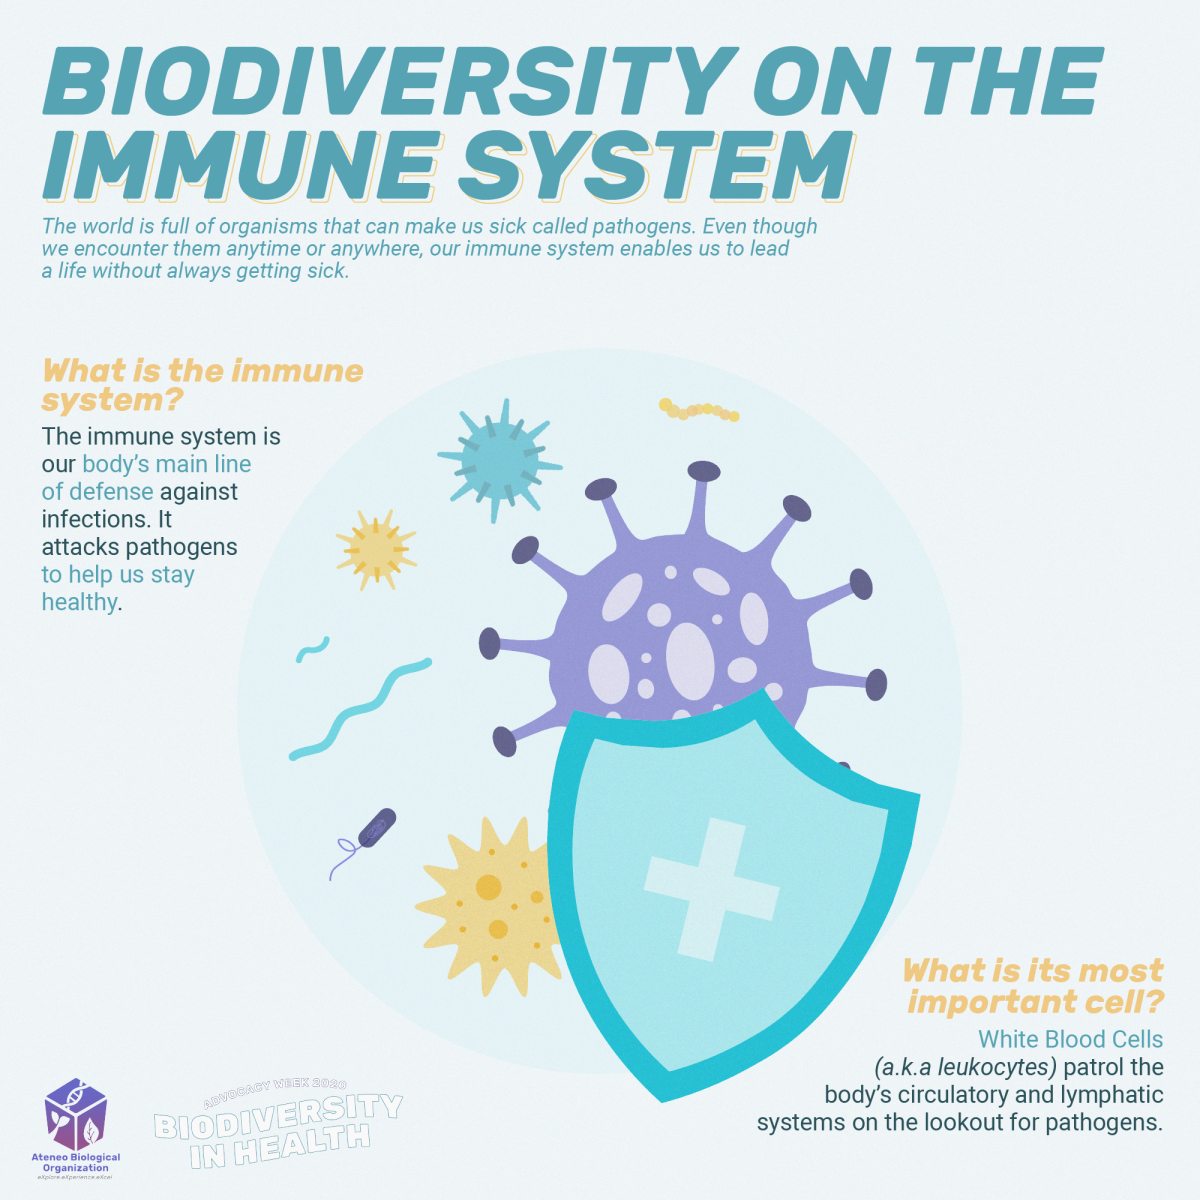 Biodiversity on the Immune System